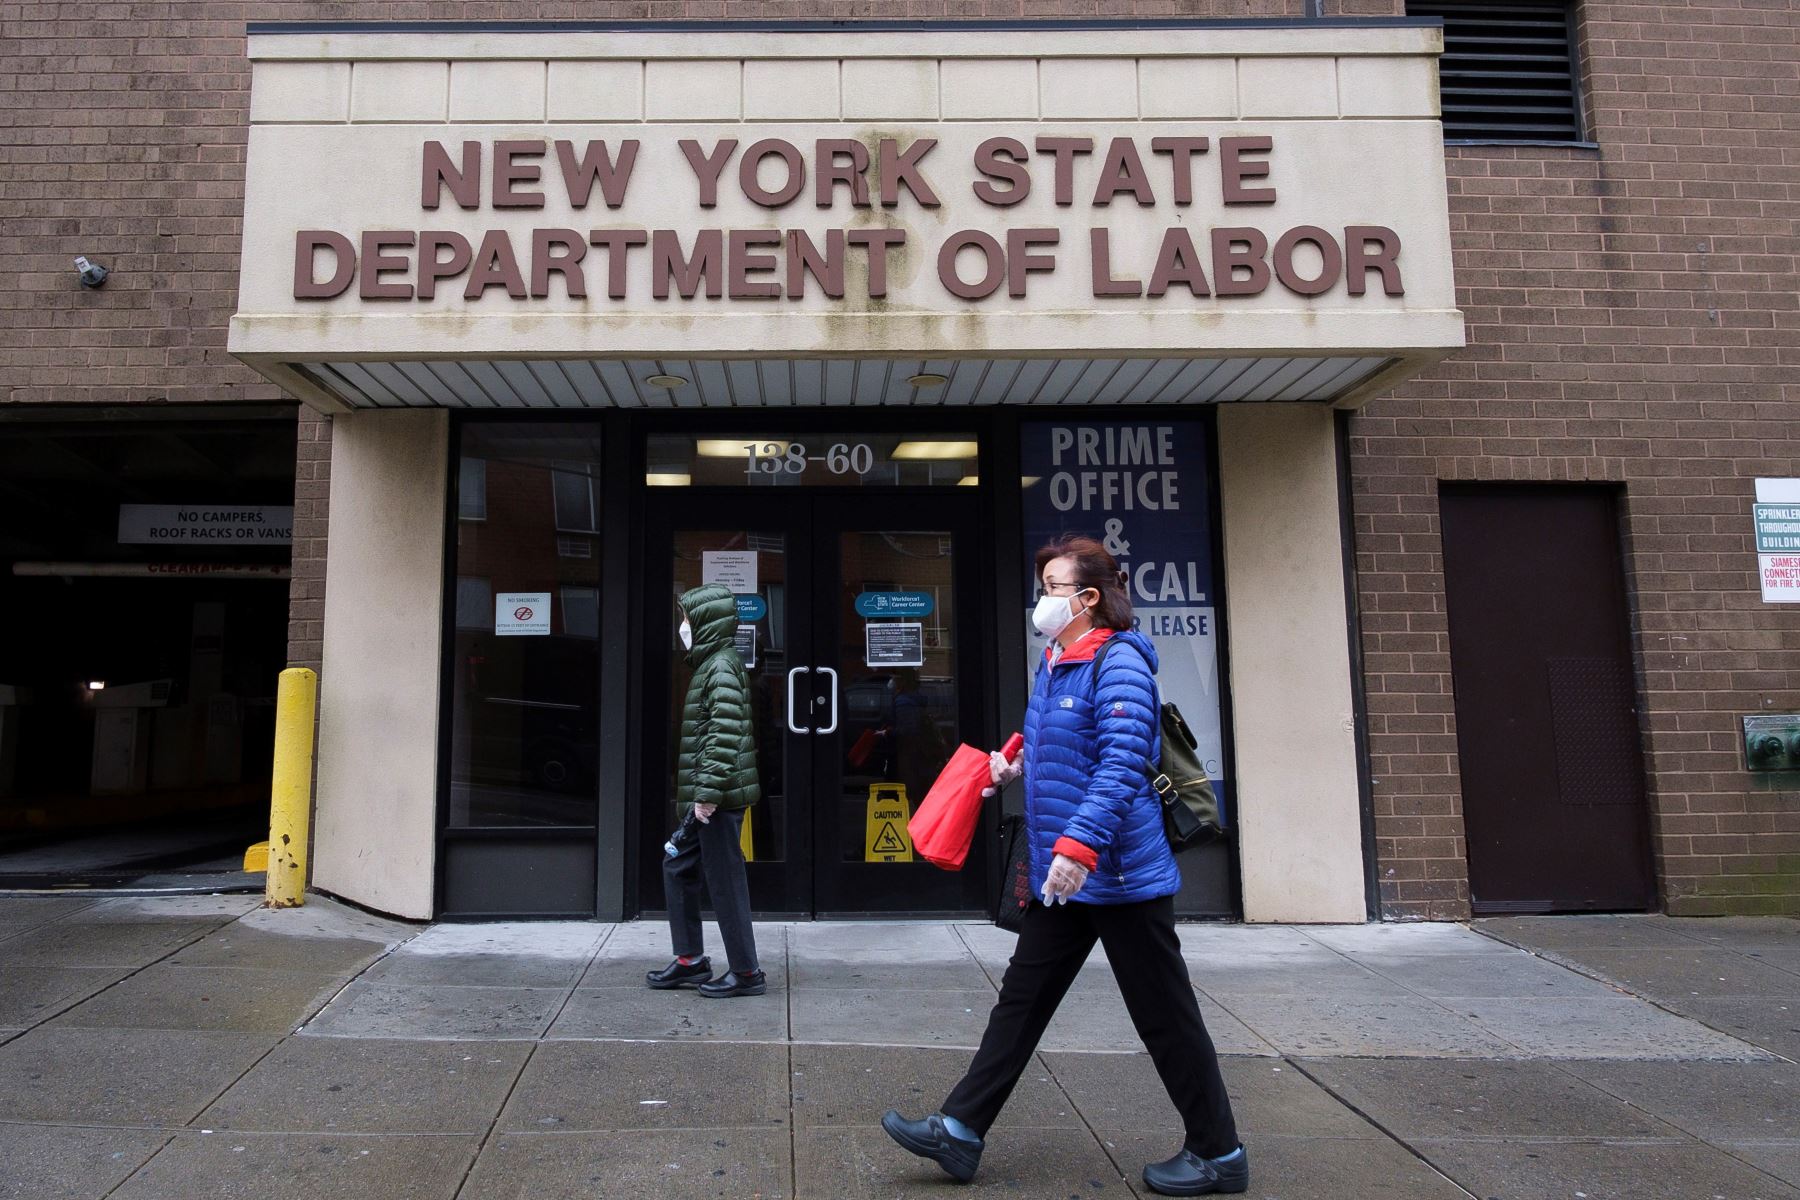 La gente pasa frente a una oficina del Departamento de Trabajo del Estado de Nueva York cerrada debido al coronavirus.
Foto: EFE